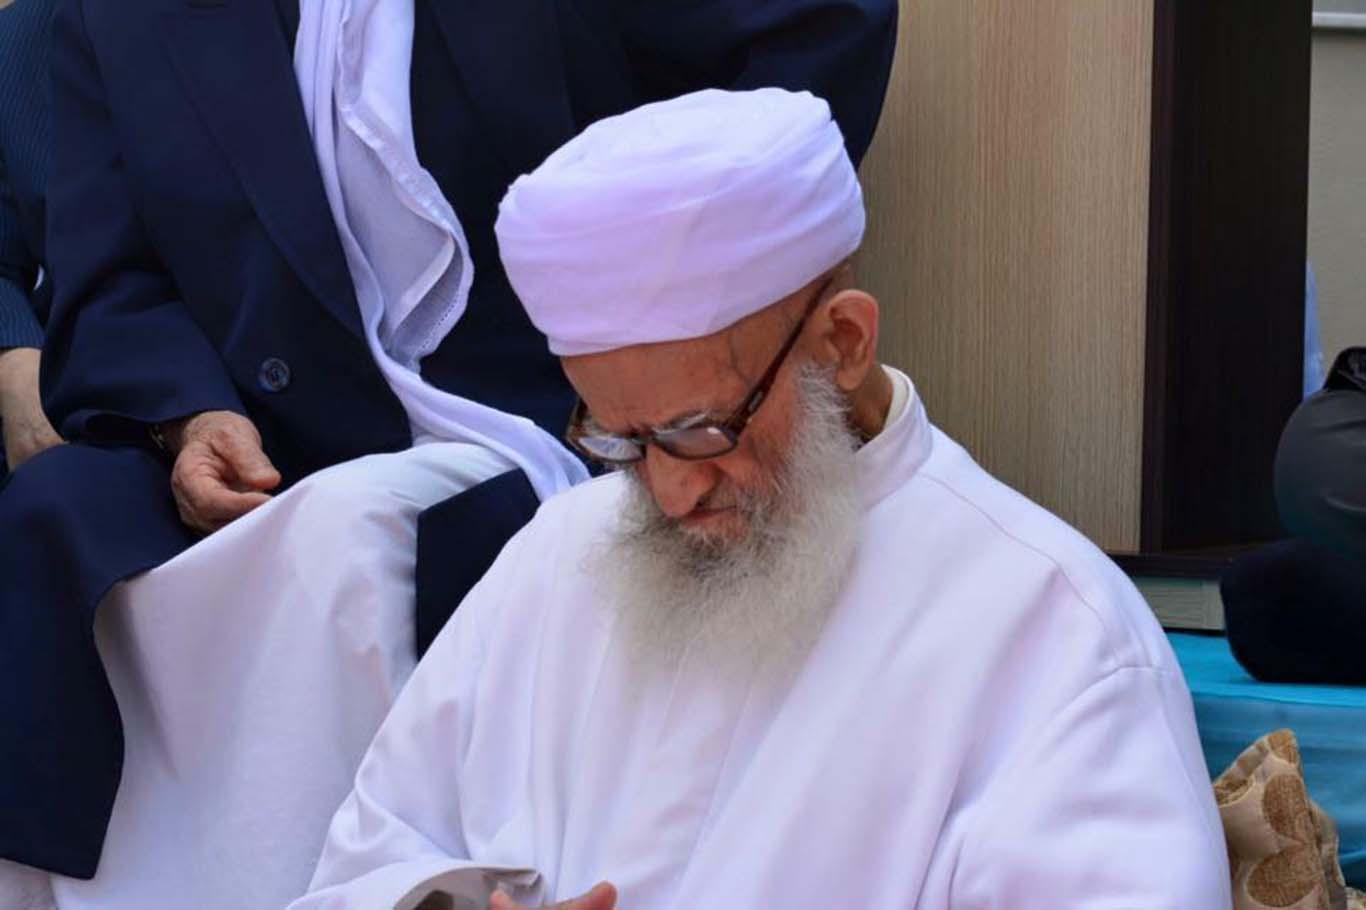 Mullah Hüseyin al-Buti passed away